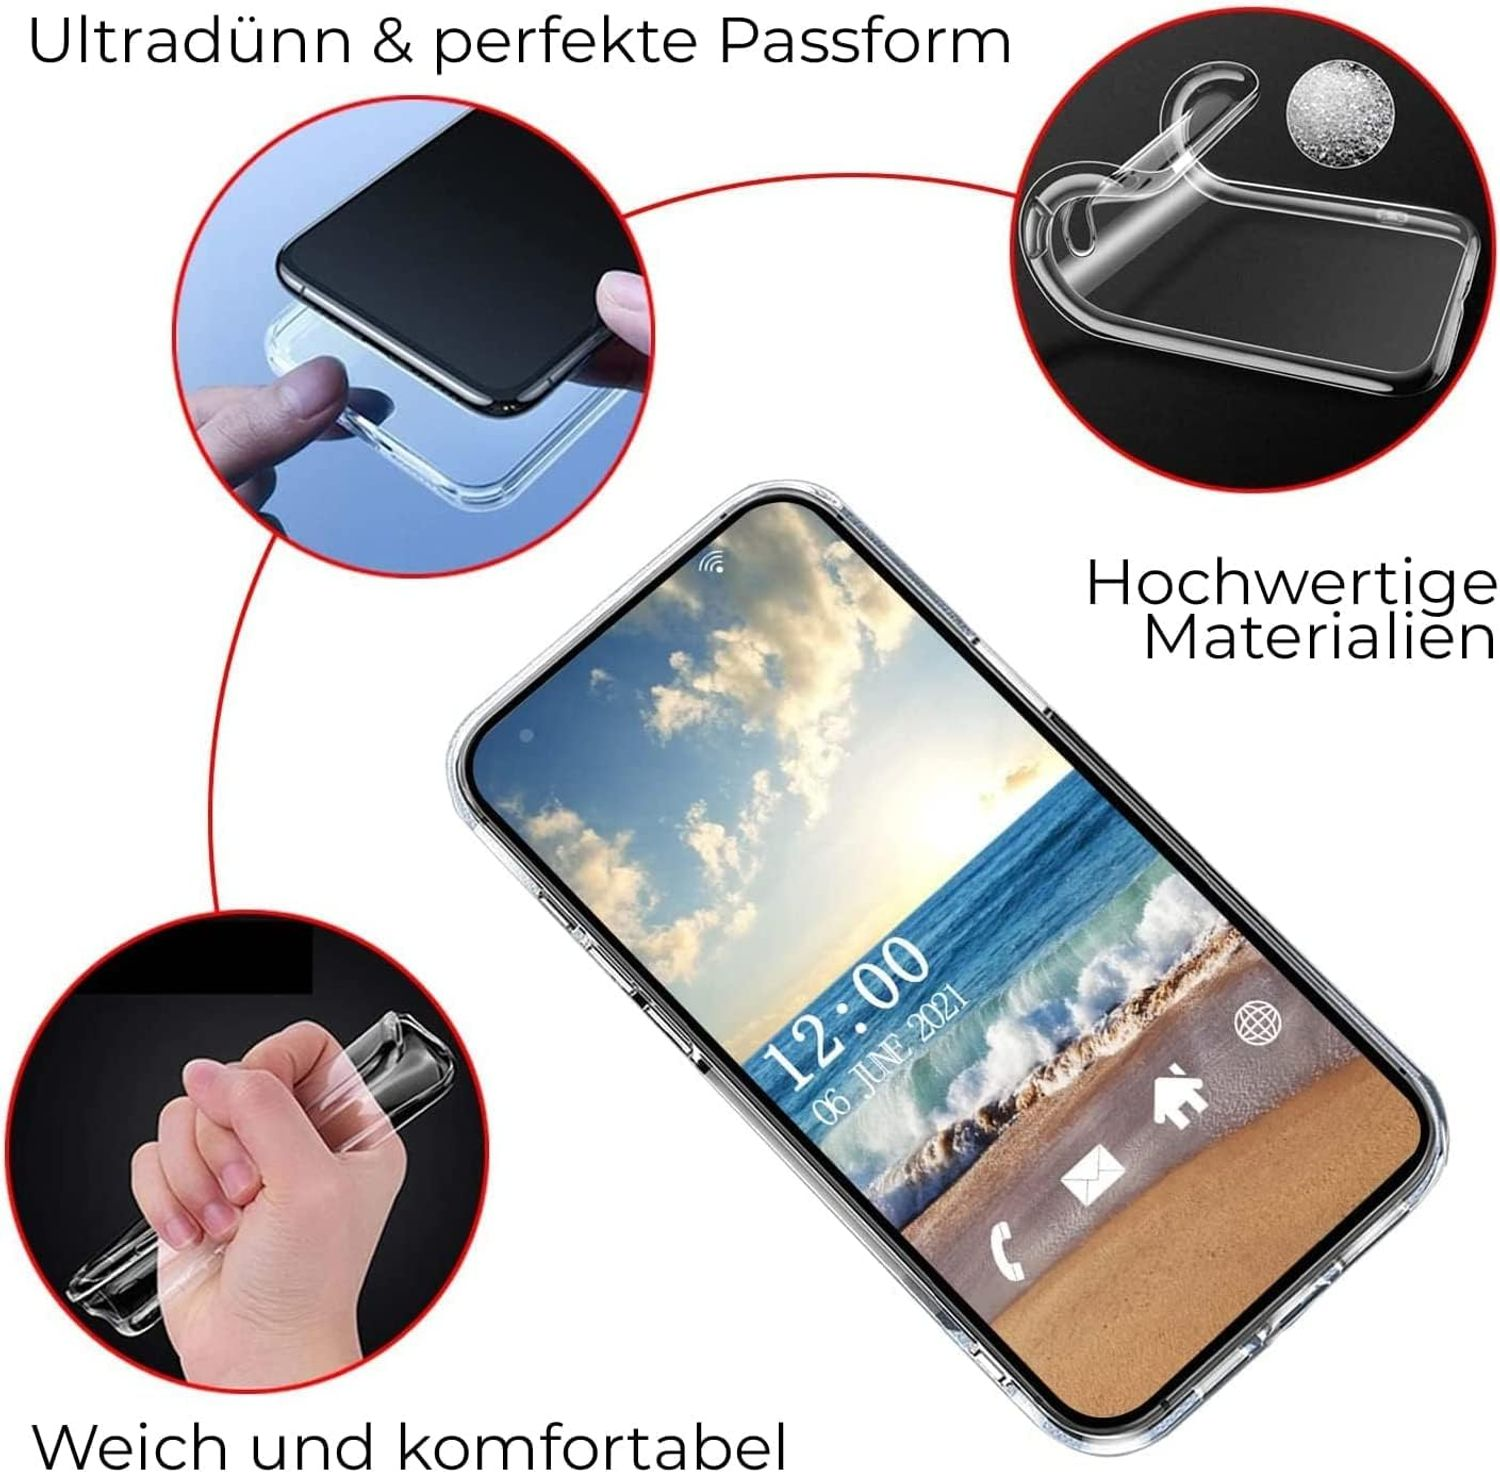 Schloß Neuschwannstein Case, Backcover, Samsung, Galaxy 4G, DESIGN A13 KÖNIG